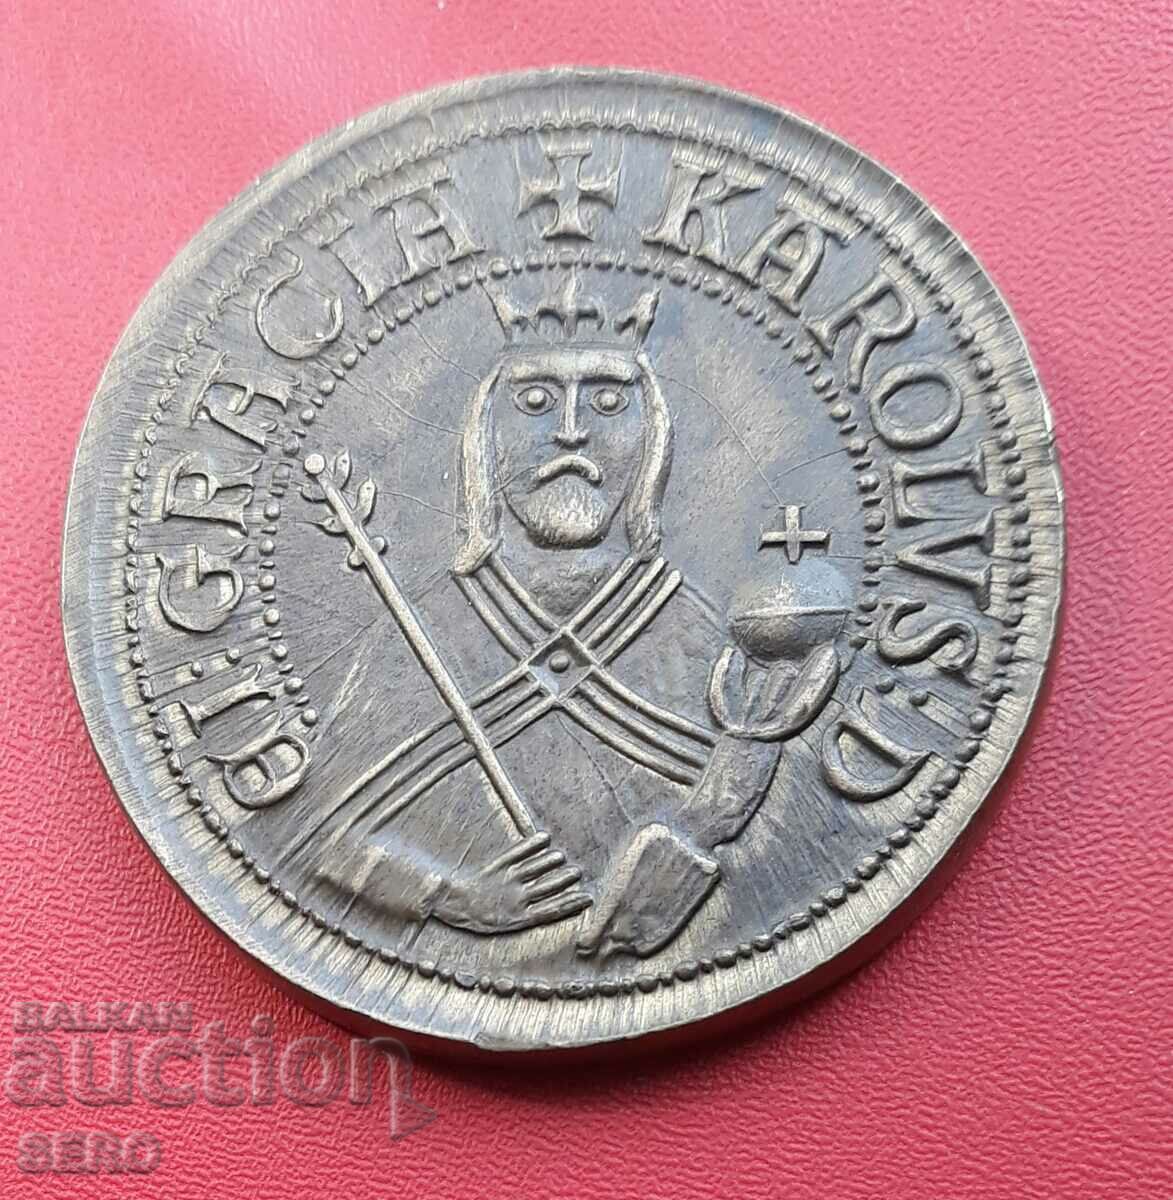 Czechia-medal/replica gold guilder/-Charles IV 1316-1378